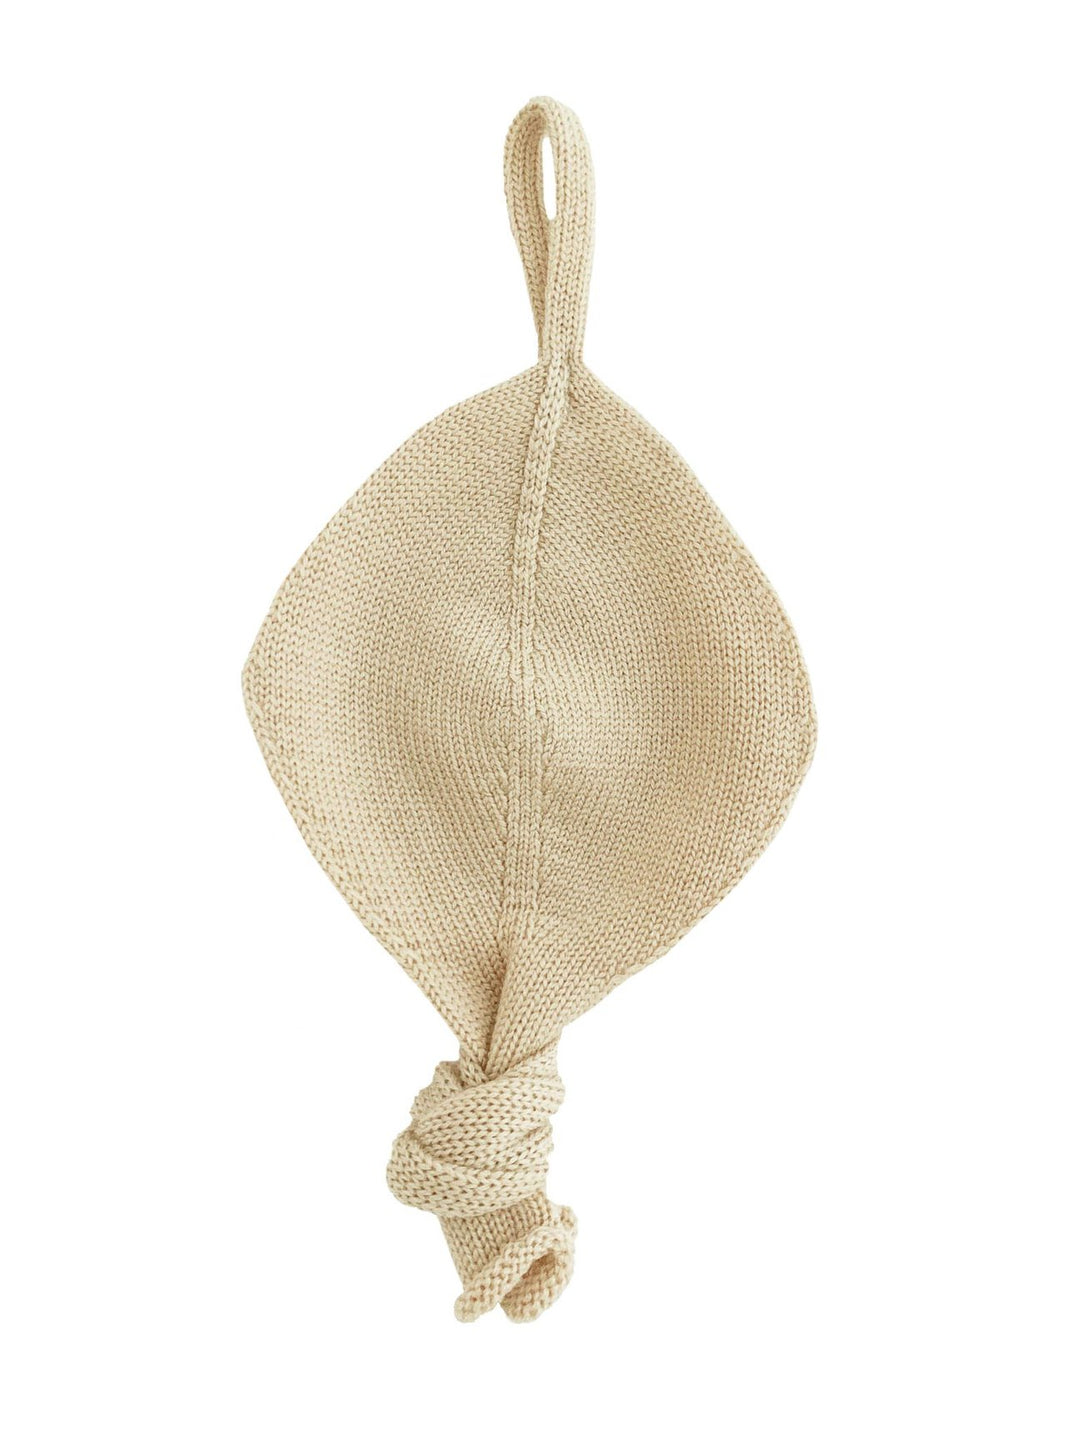 HVID knitwear Oat neutral beige Hvid merino wool dummy pacifier comforter chain accessory BIBs 